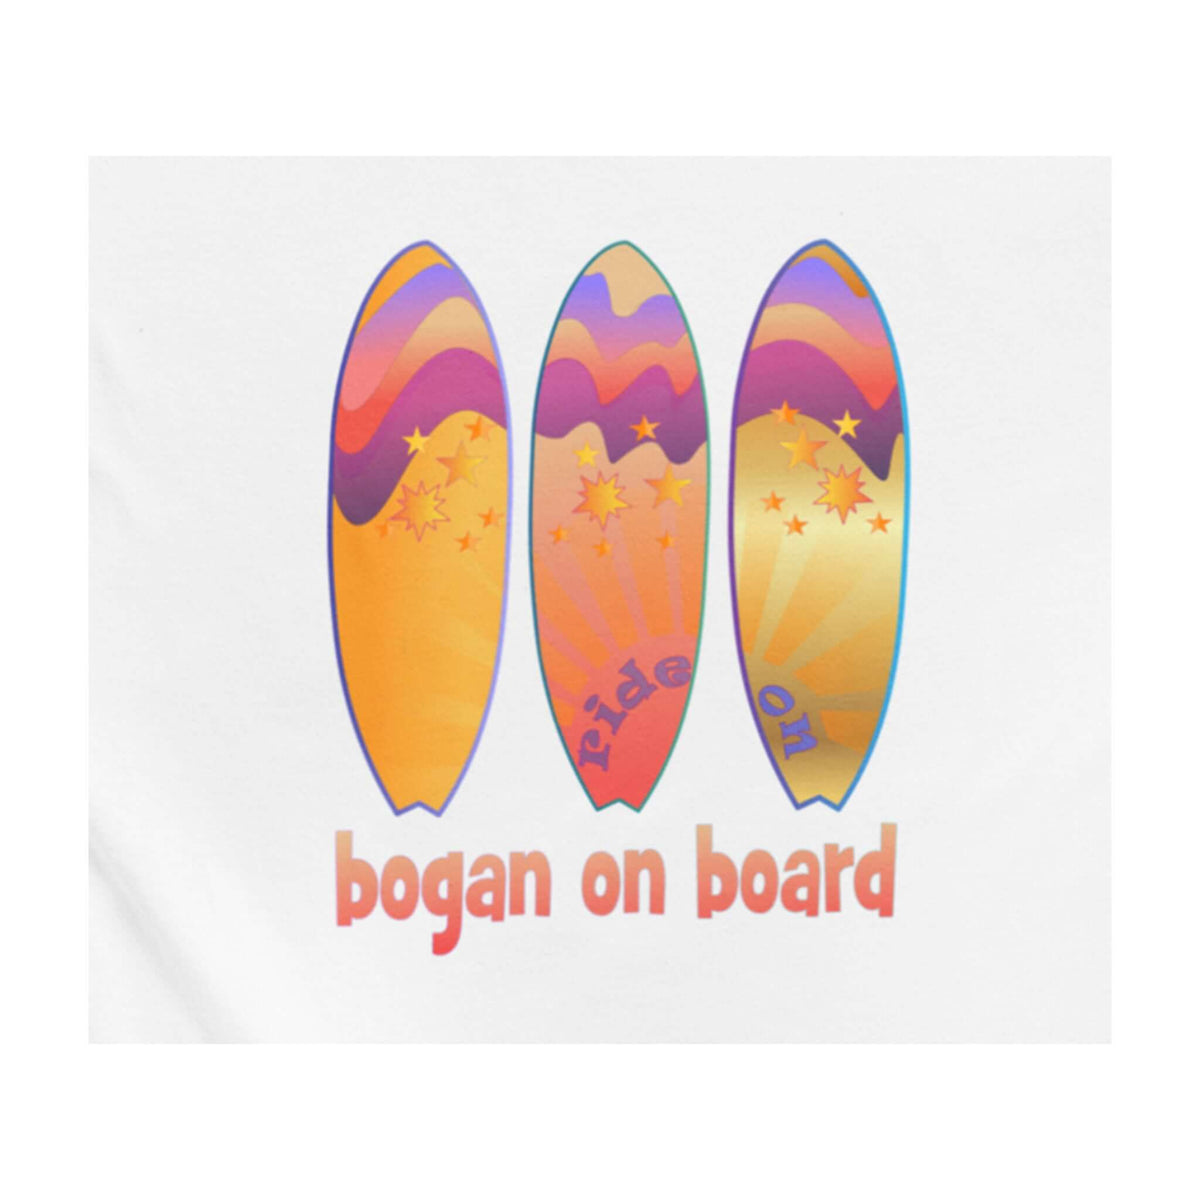 Aussie surf design. Bogan on Board with three coloured surfboards